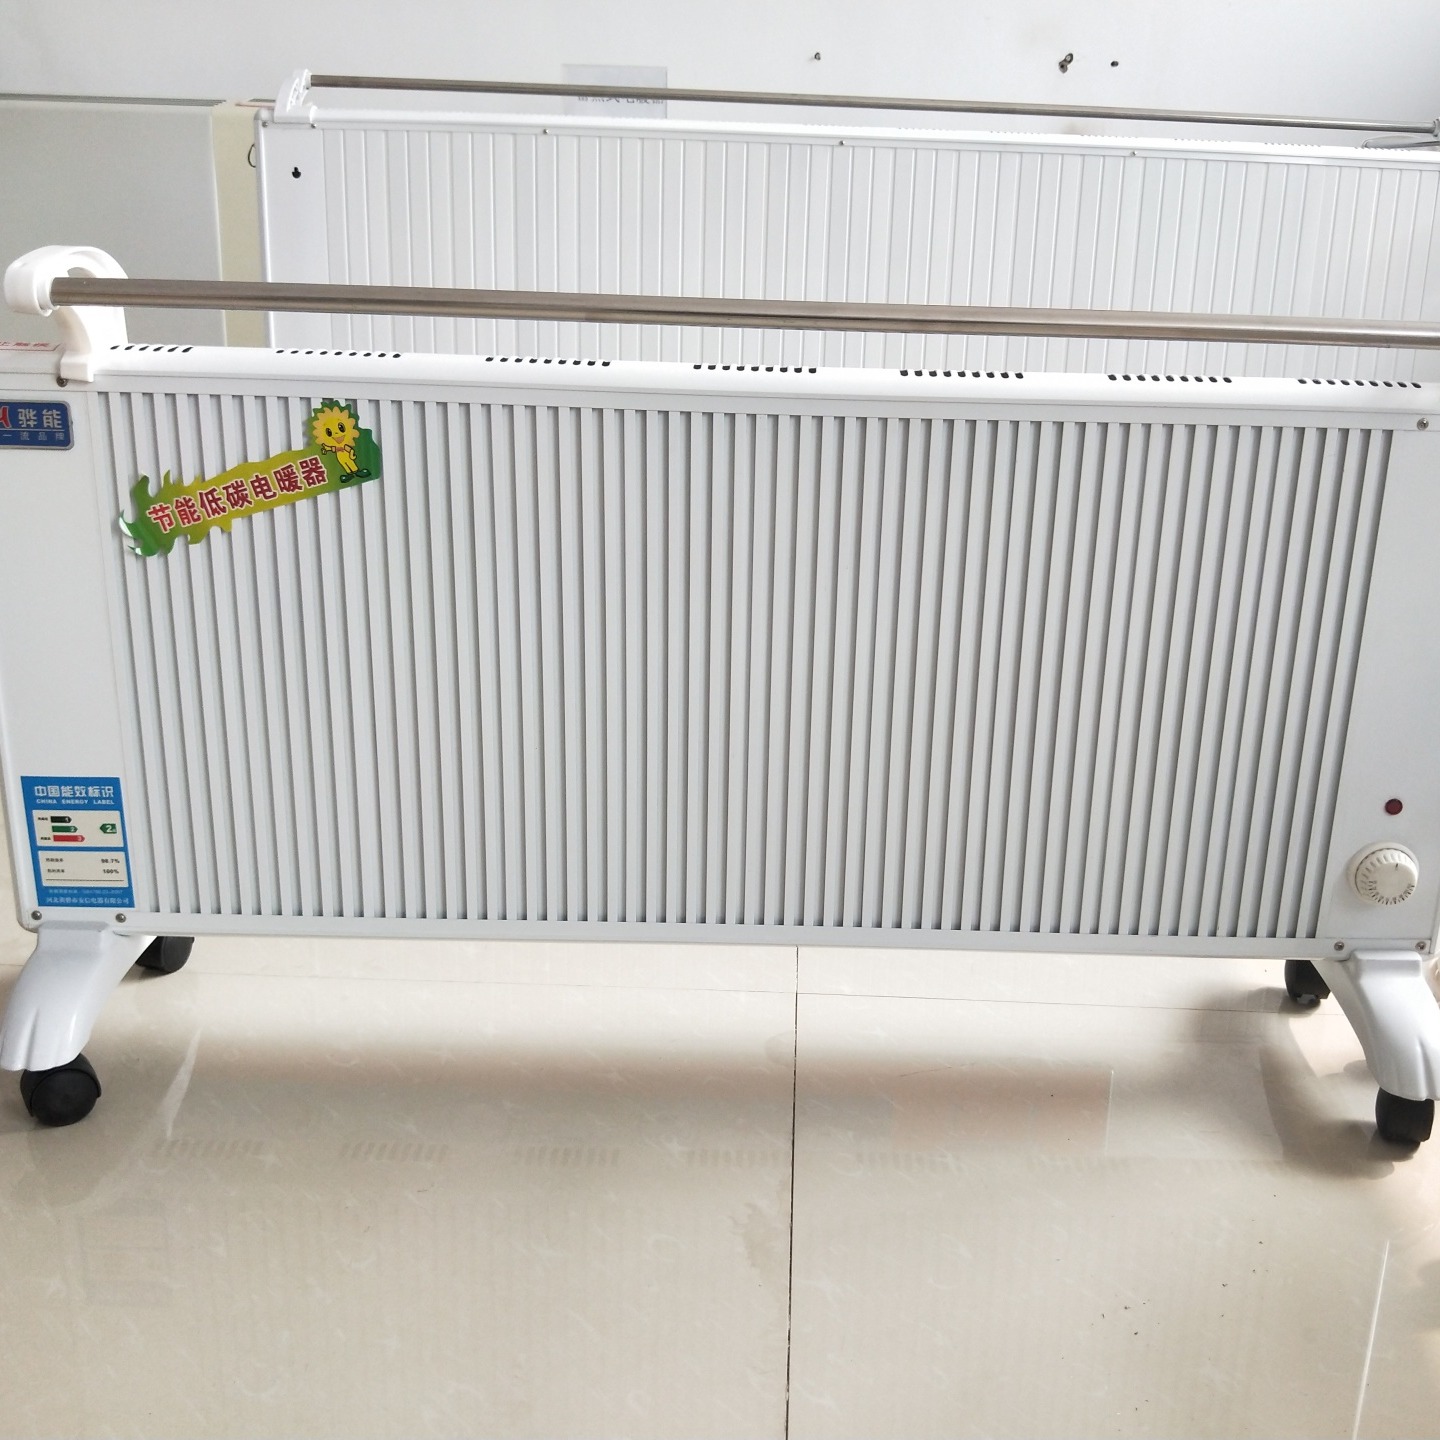 鑫达美裕供应生产 GRTJ-2000落地式电取暖器 家用取暖器 电暖器